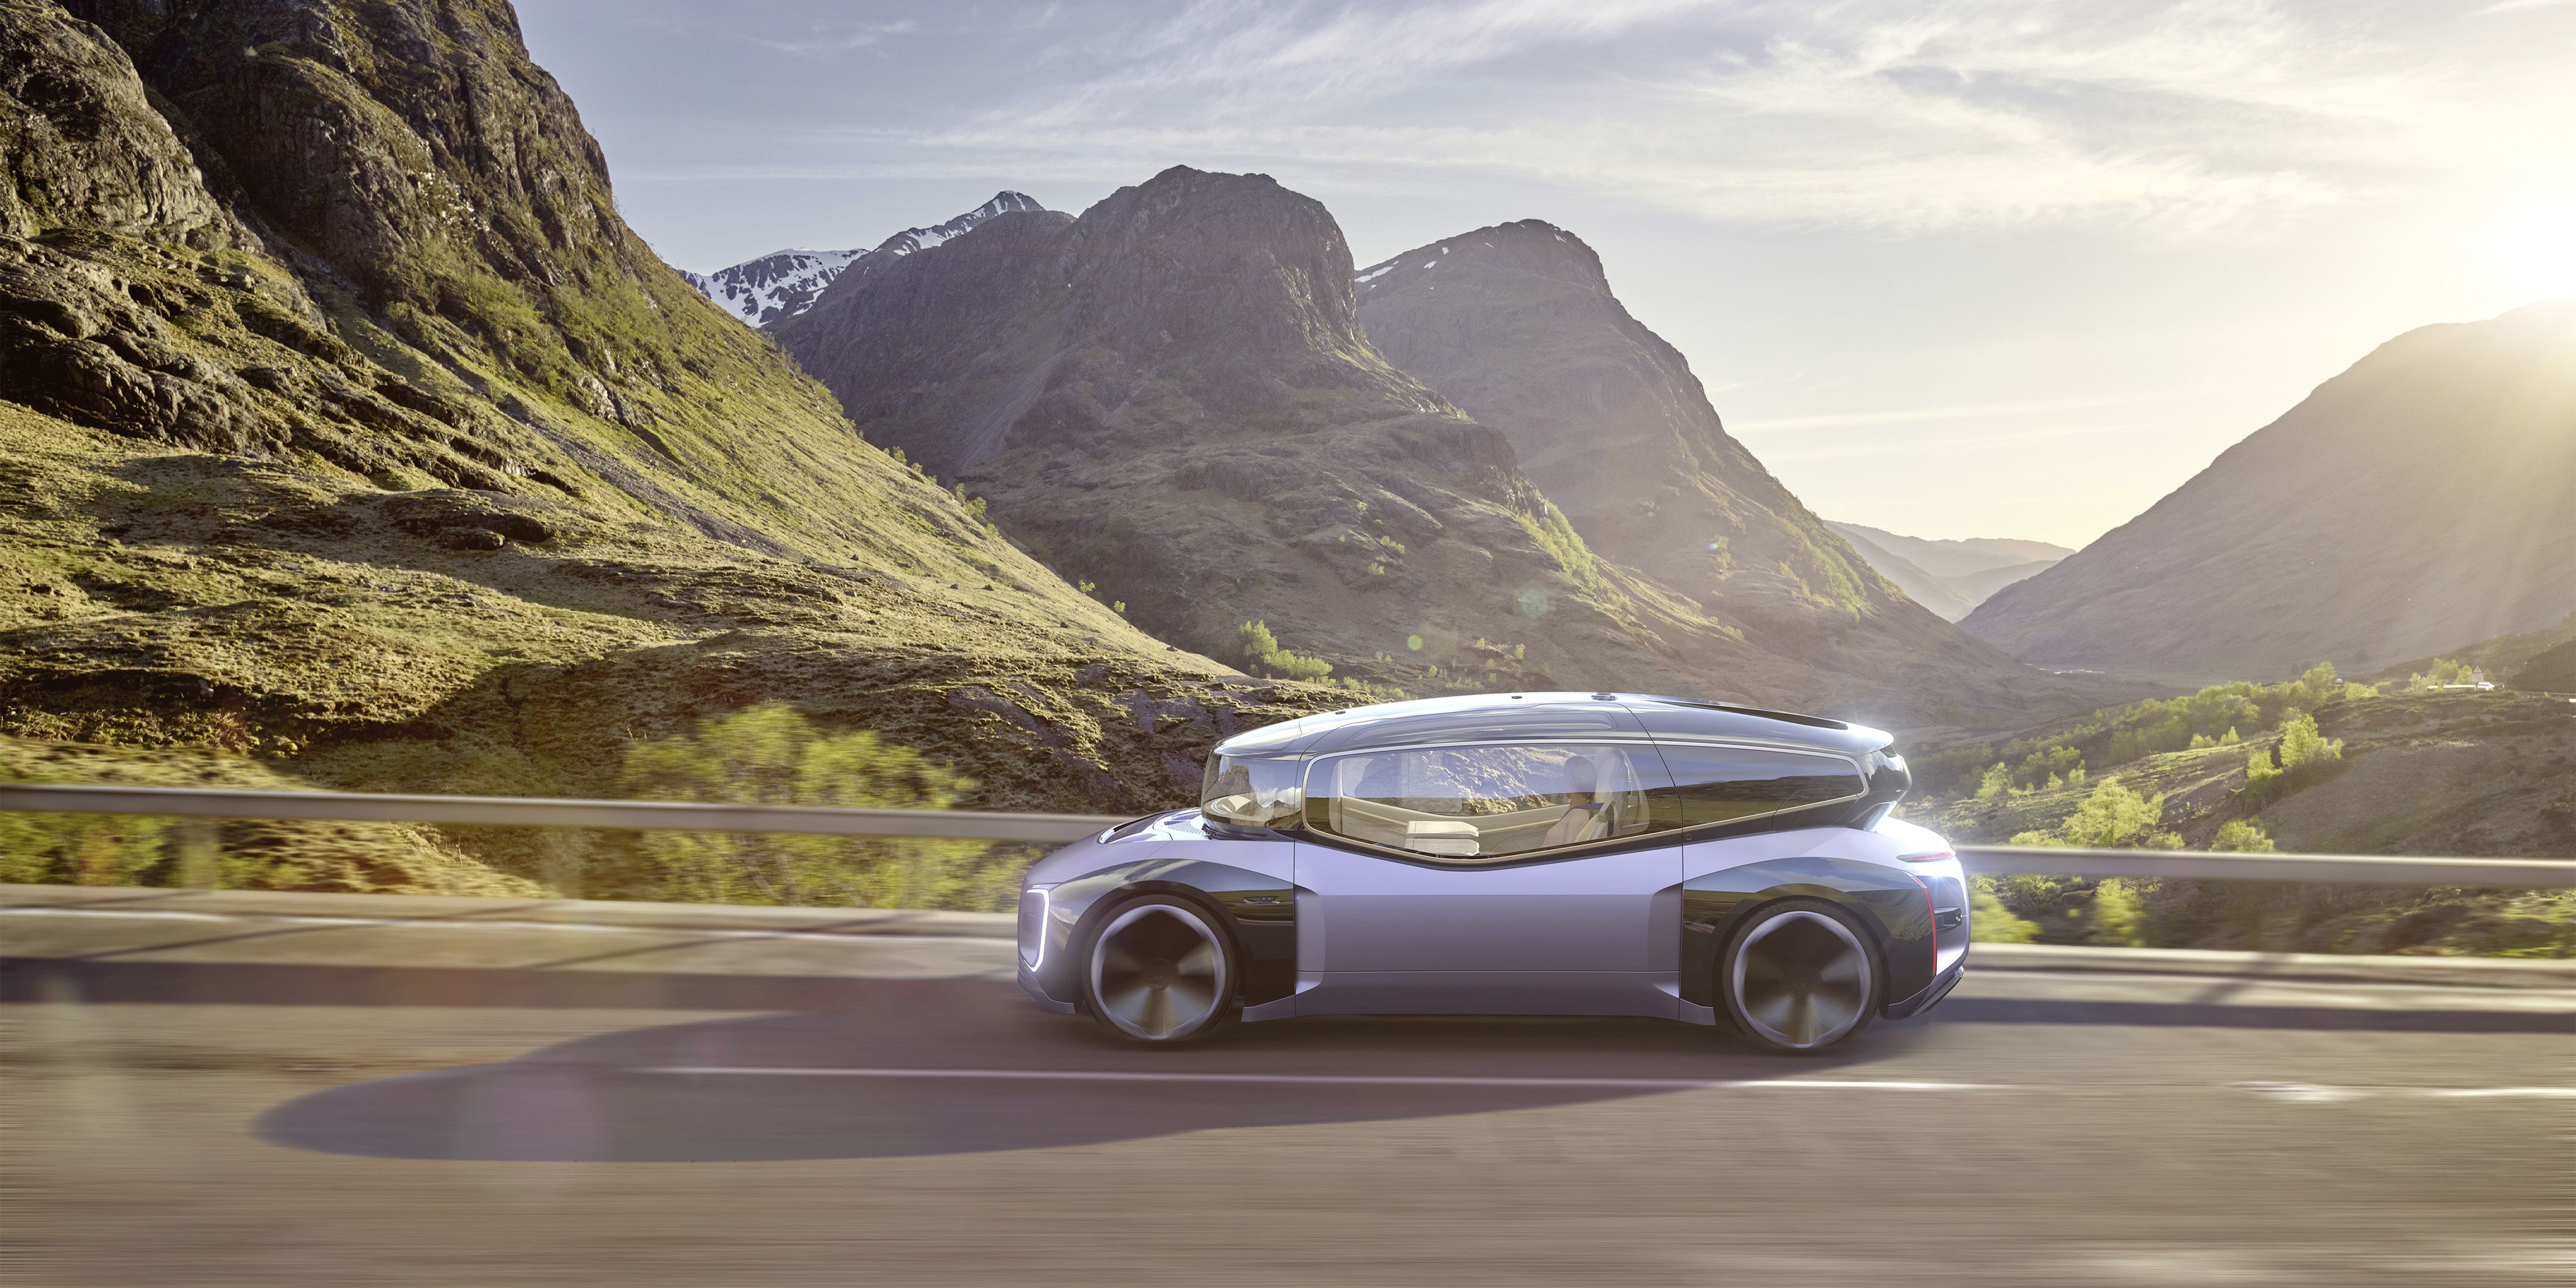 VW Gen.Travel Autonomous Concept Is So Ugly It's Cute